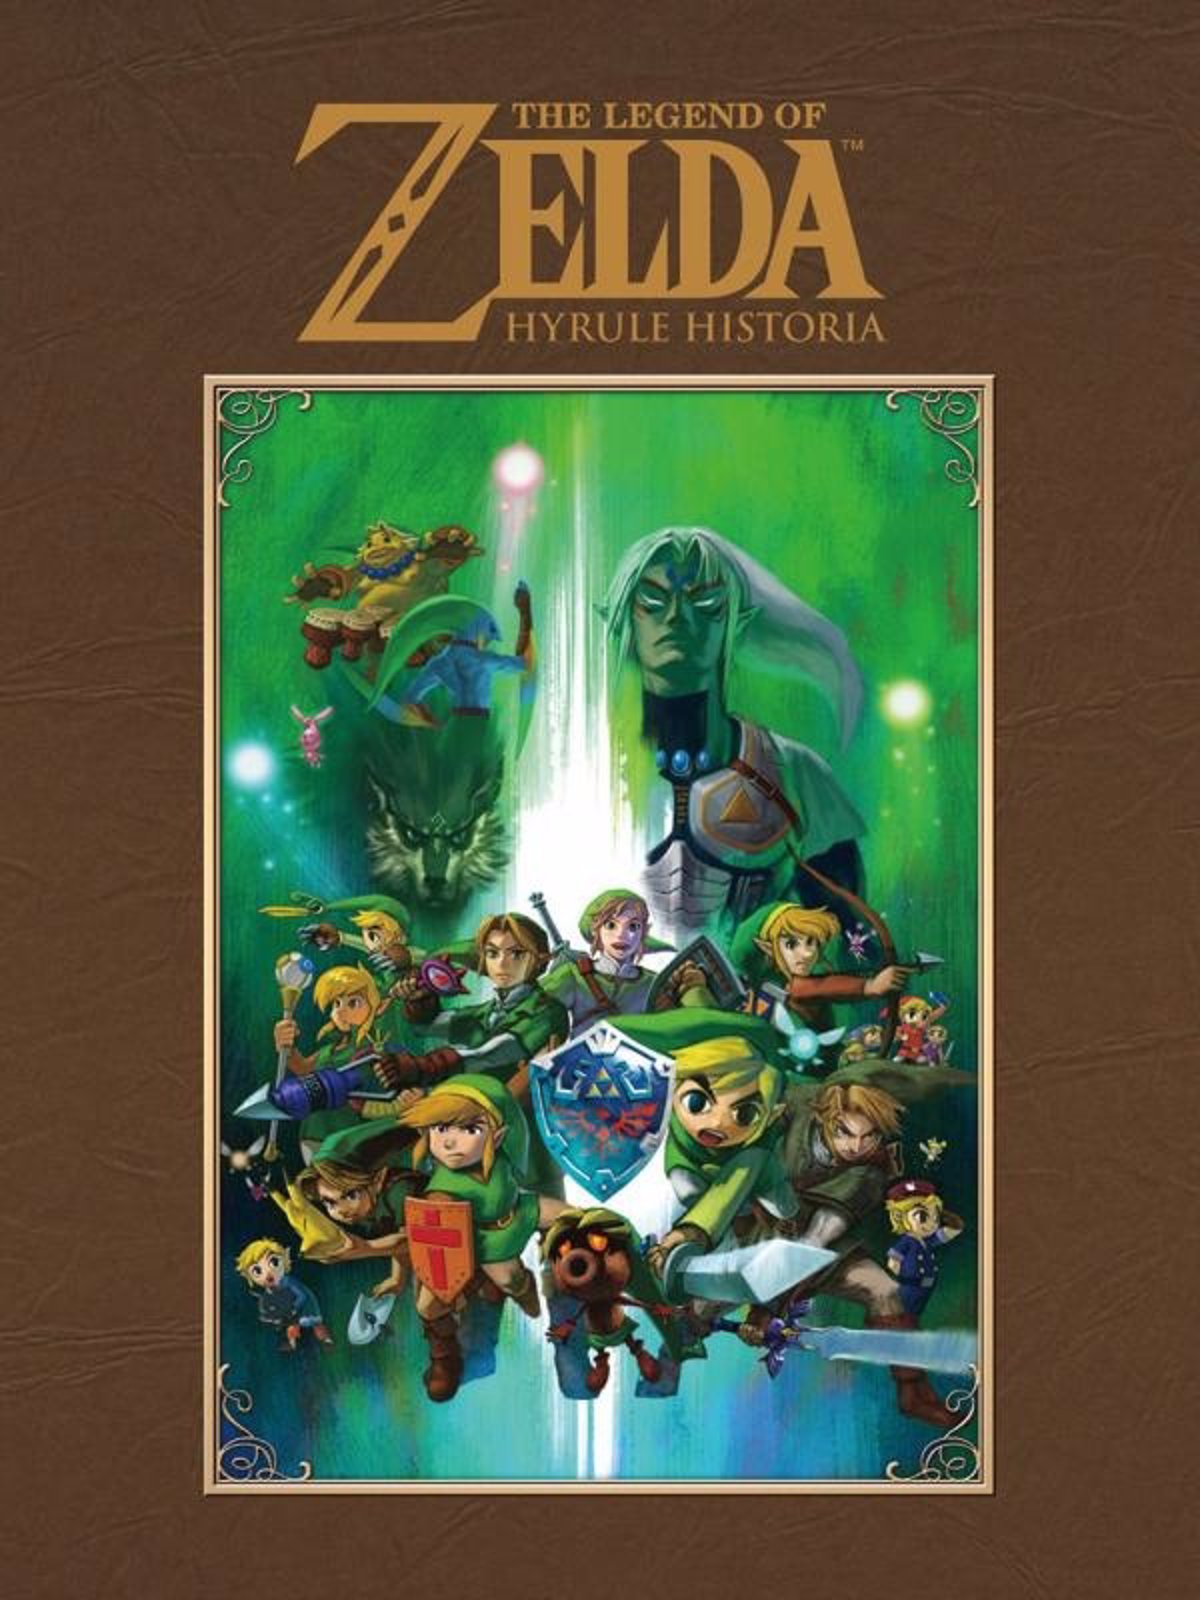 Ideal para gamers: Libro Zelda 25 aniversario